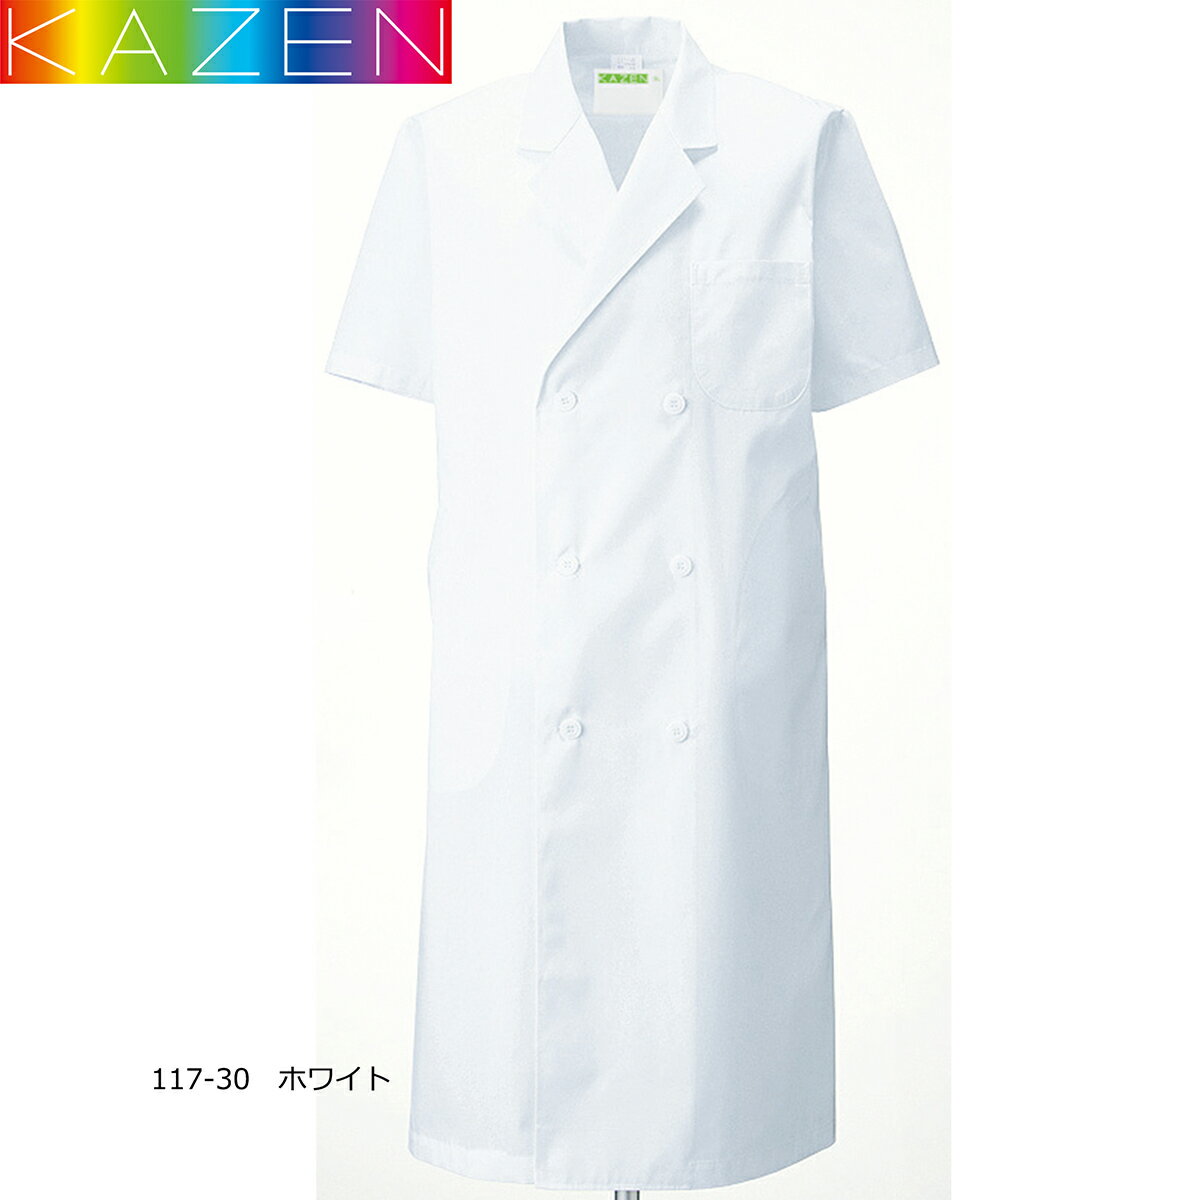 白衣 男性 カゼン メンズ 診察衣W型 半袖 ホワイト 117-30 ドクターコート 白 吸汗 防縮